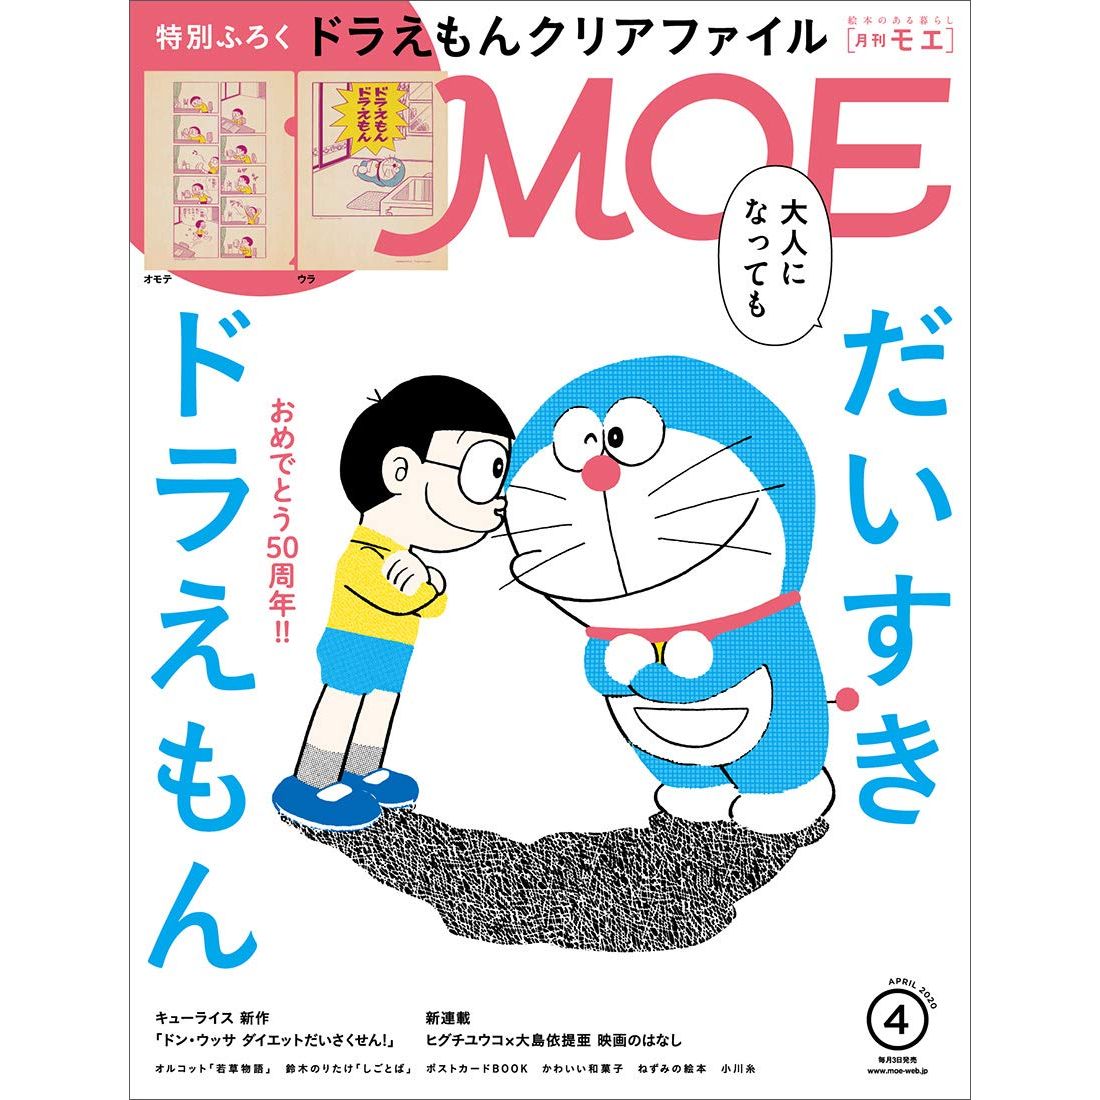 More Magazine  Doraemon Issue 2020